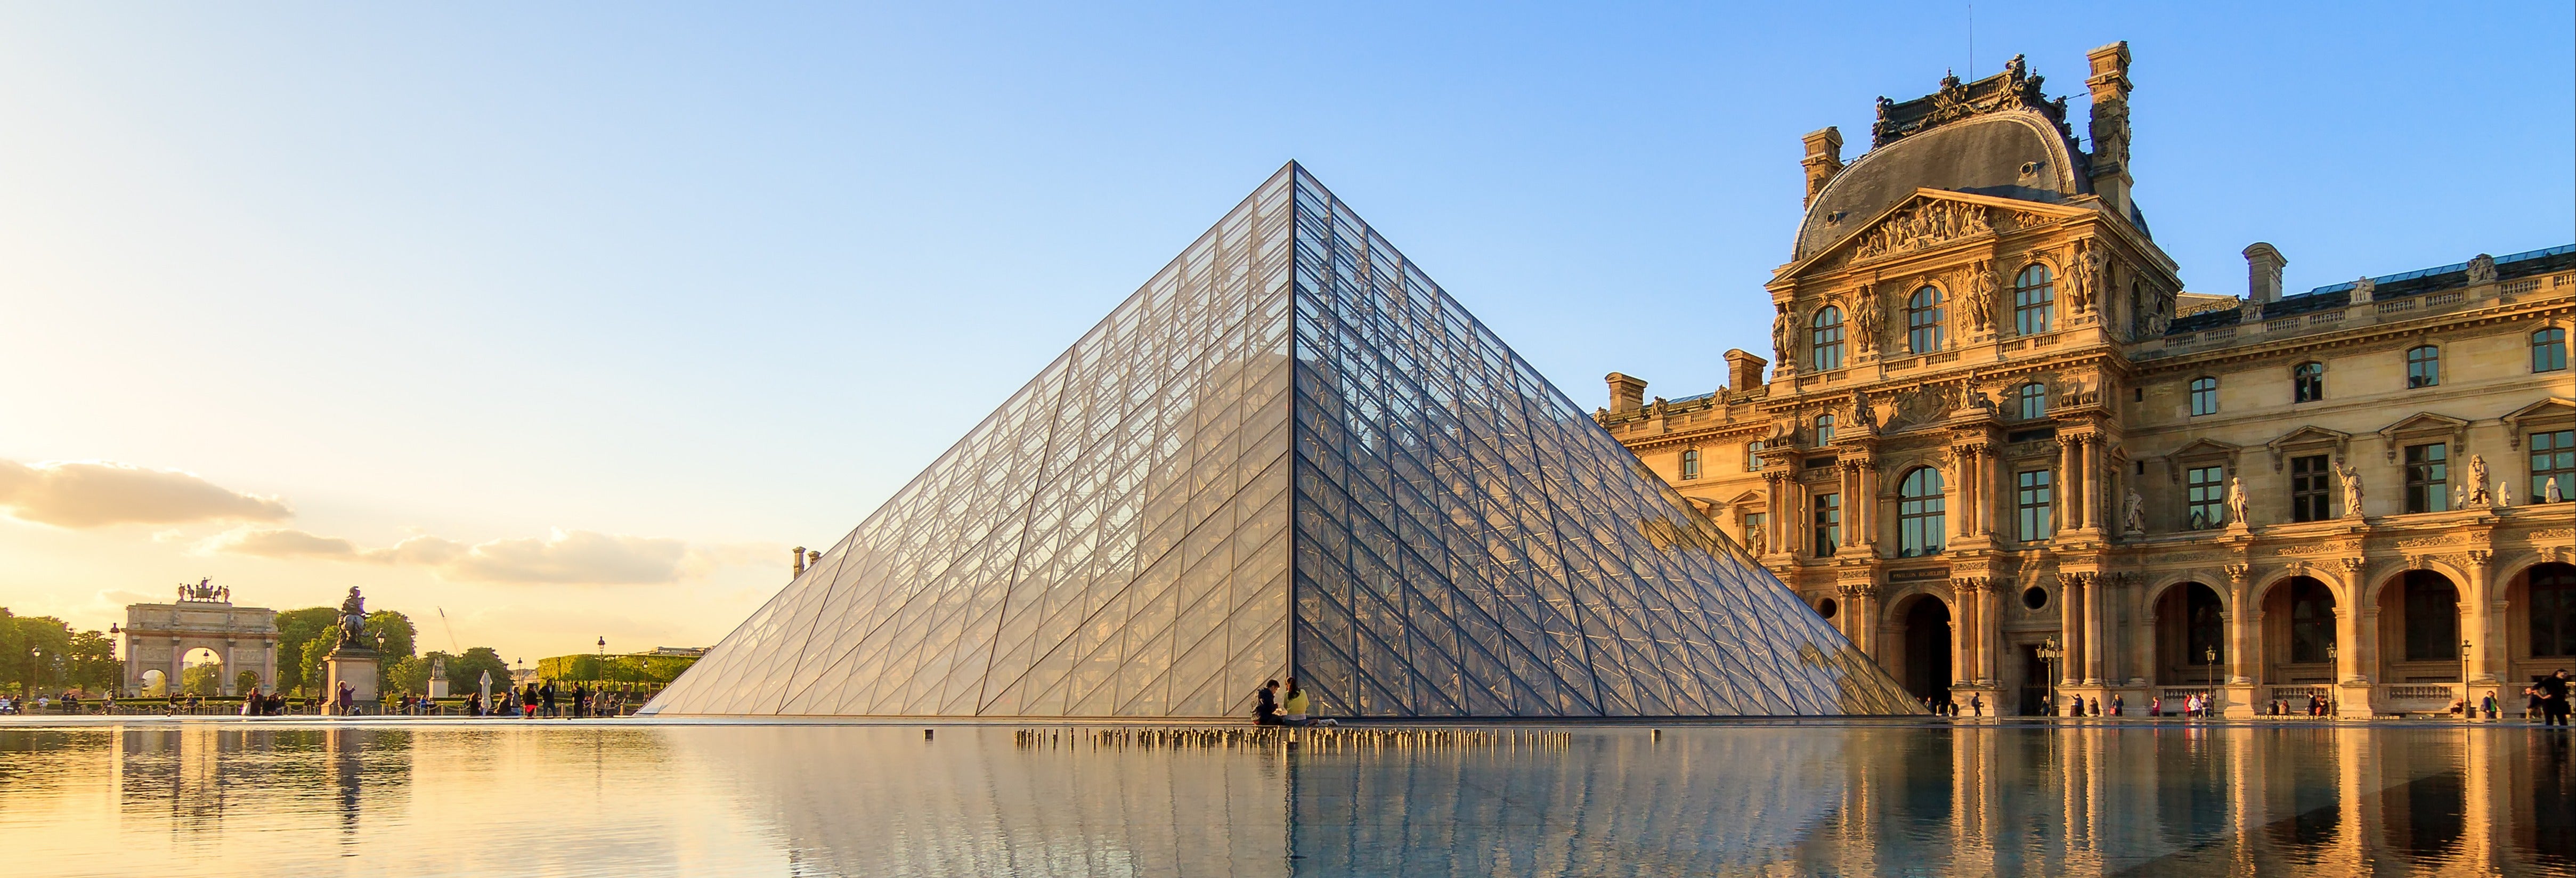 Ingresso do Museu do Louvre com acesso prioritário